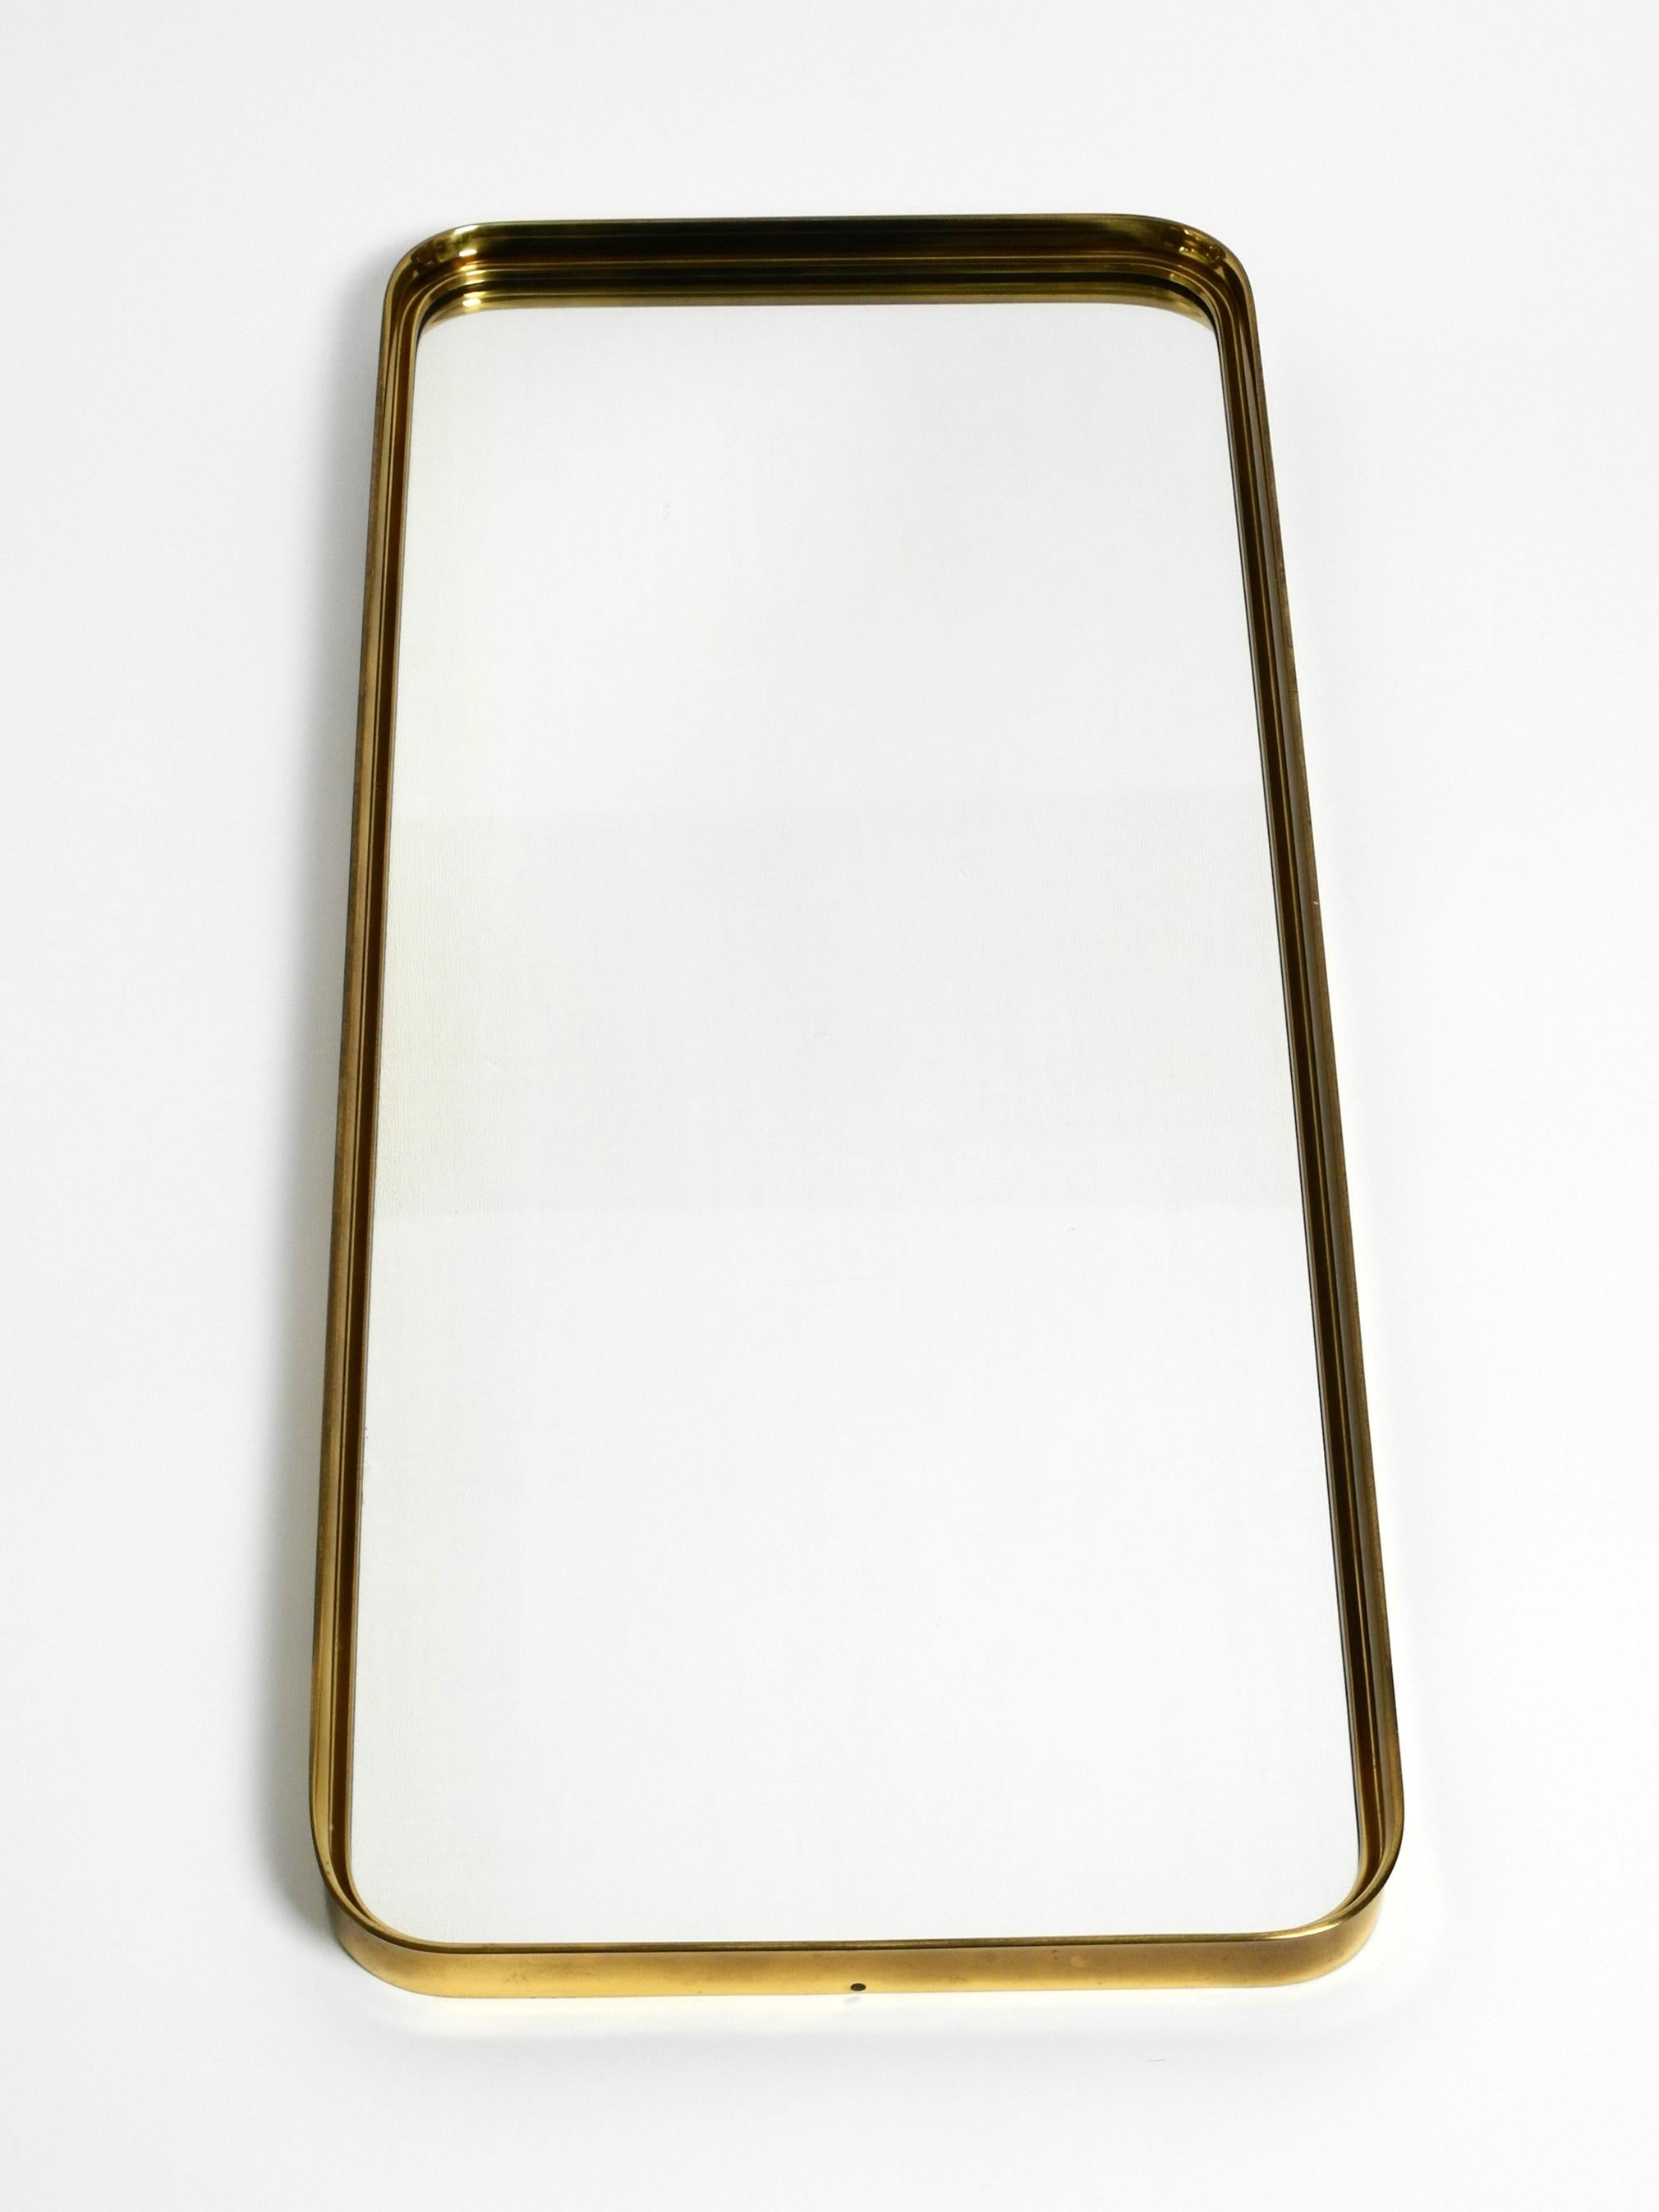 Very Elegant Minimalist Mid Century Brass Wall Mirror by Vereinigte Werkstätten For Sale 4